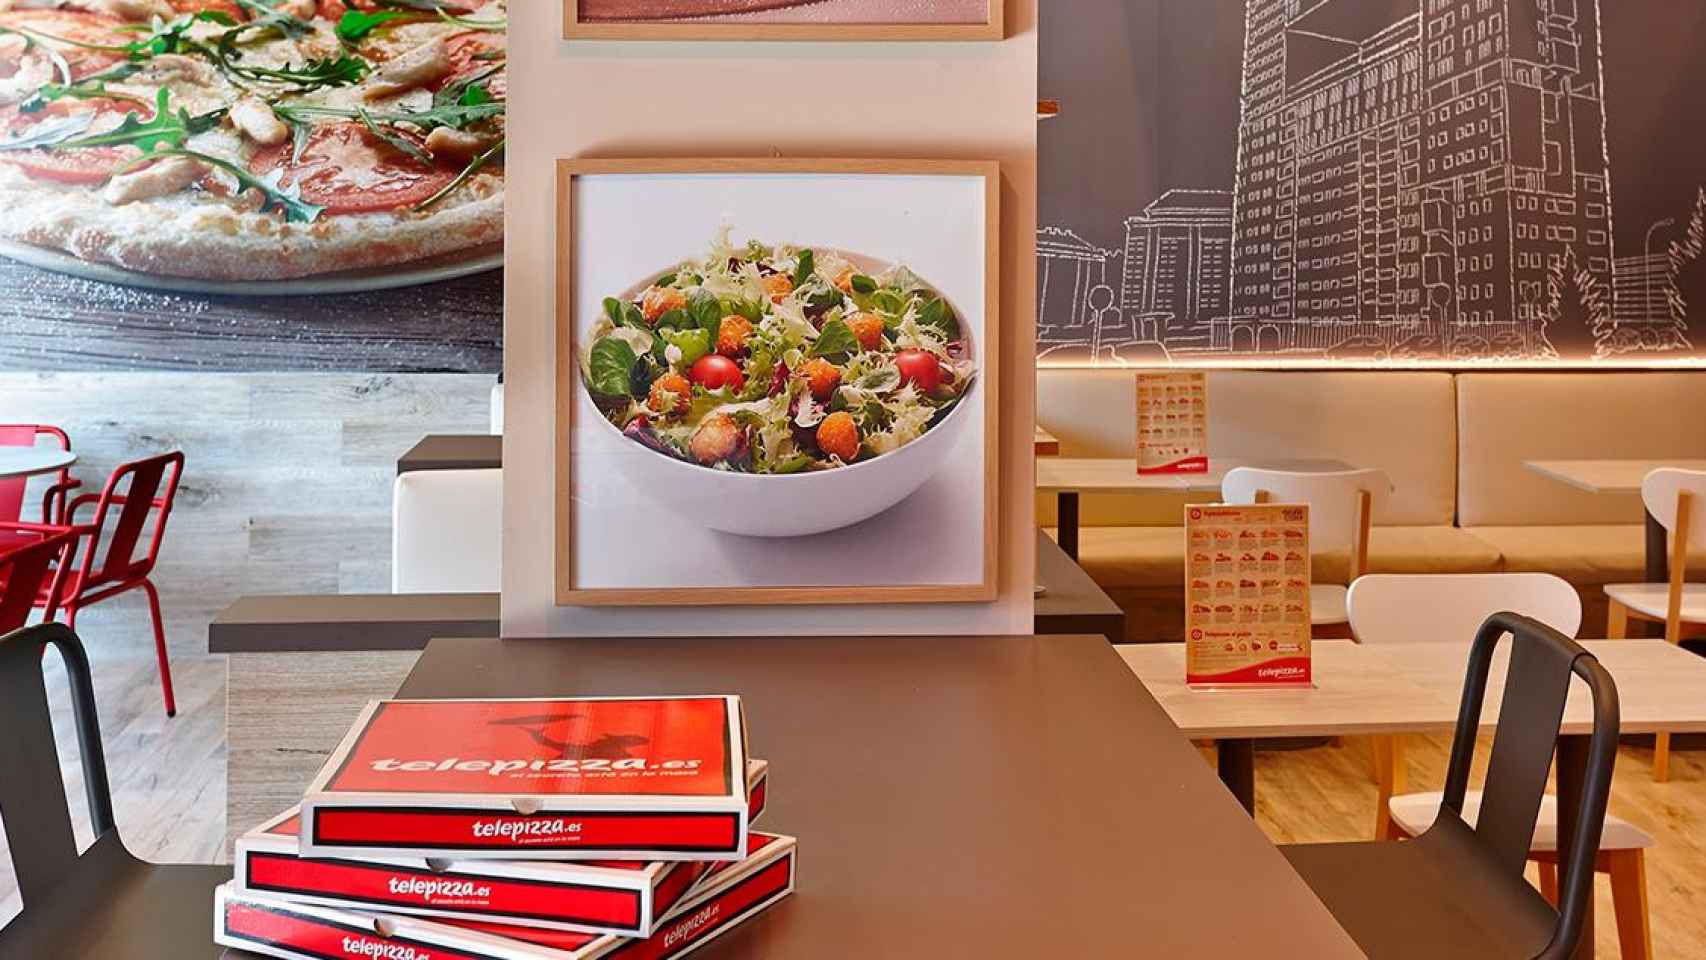 Un local de Telepizza con cajas de pizza en una mesa / EP